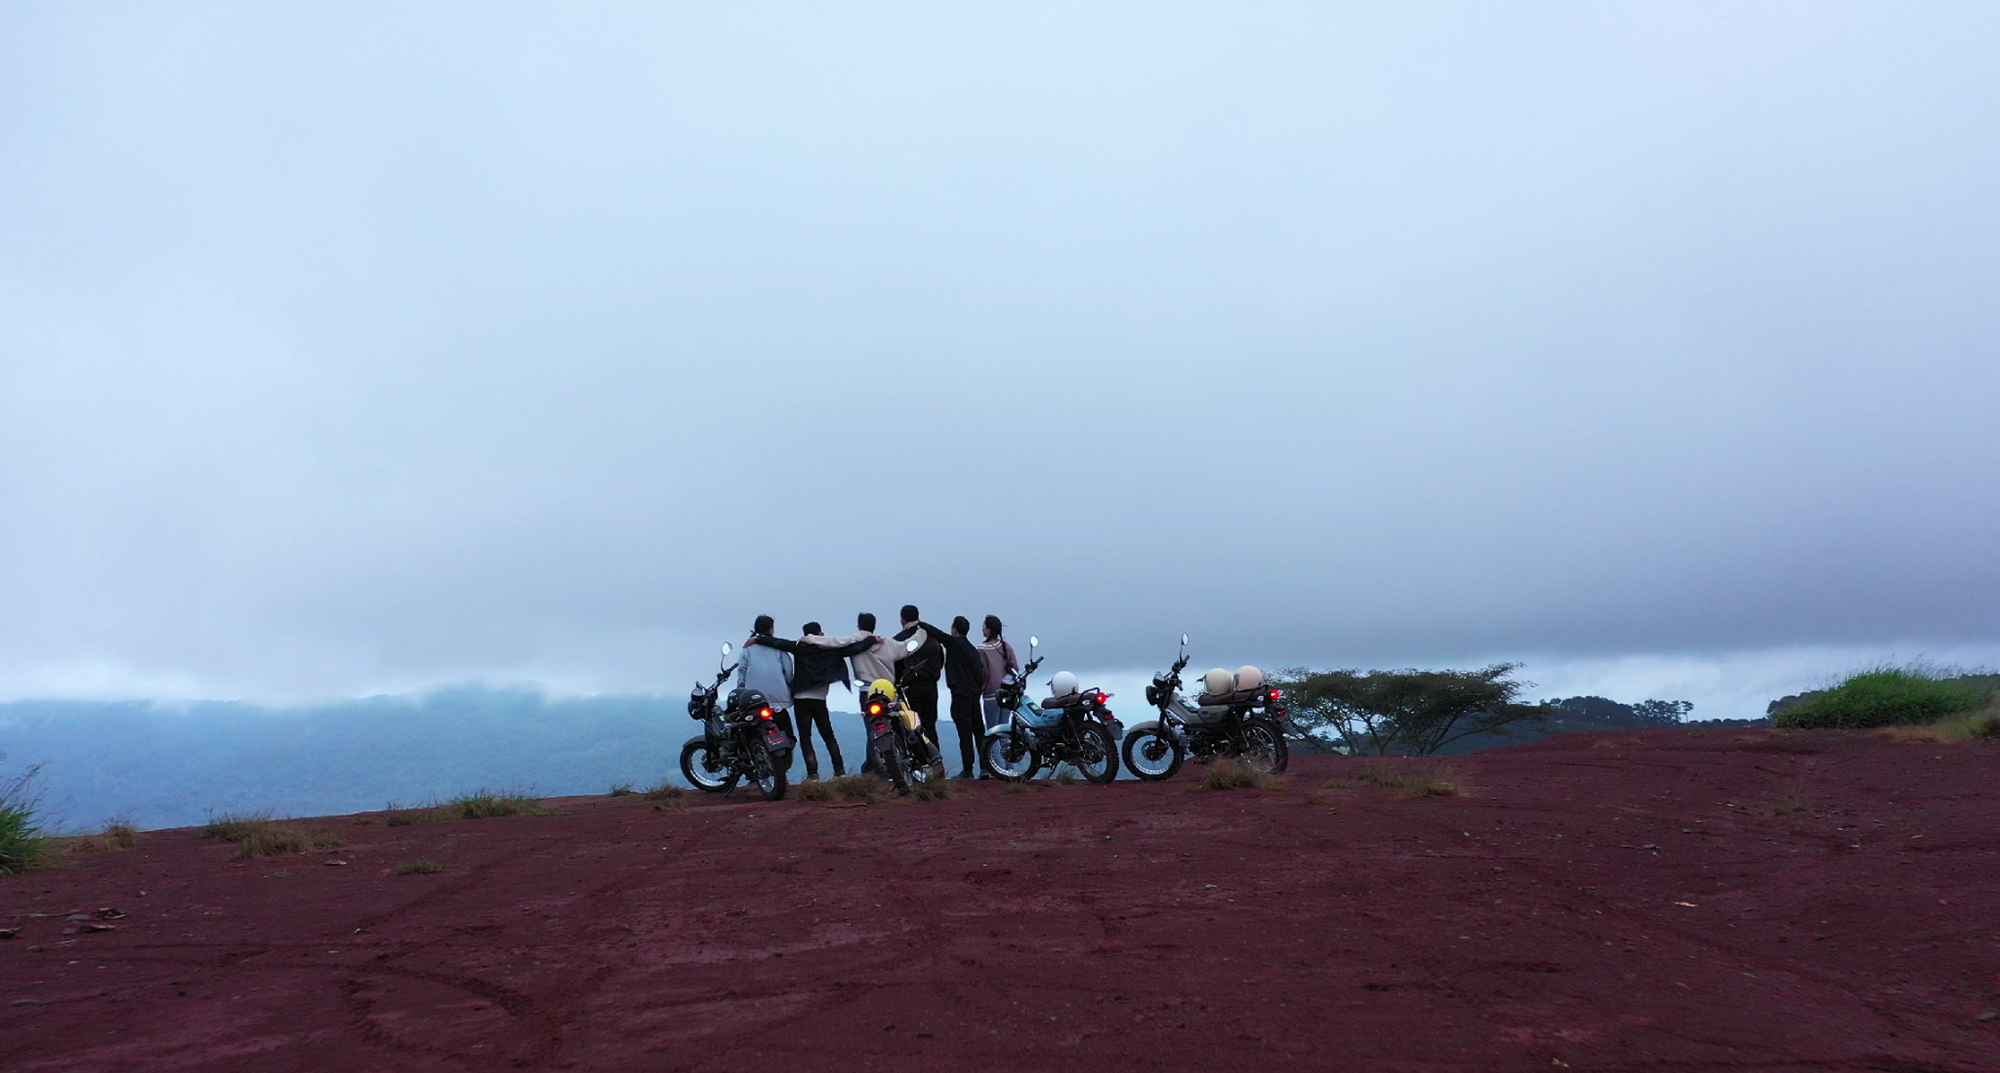 Nếu muốn phượt bằng xe máy thì đây là 4 trải nghiệm du lịch thú vị đáng tham khảo - Ảnh 1.